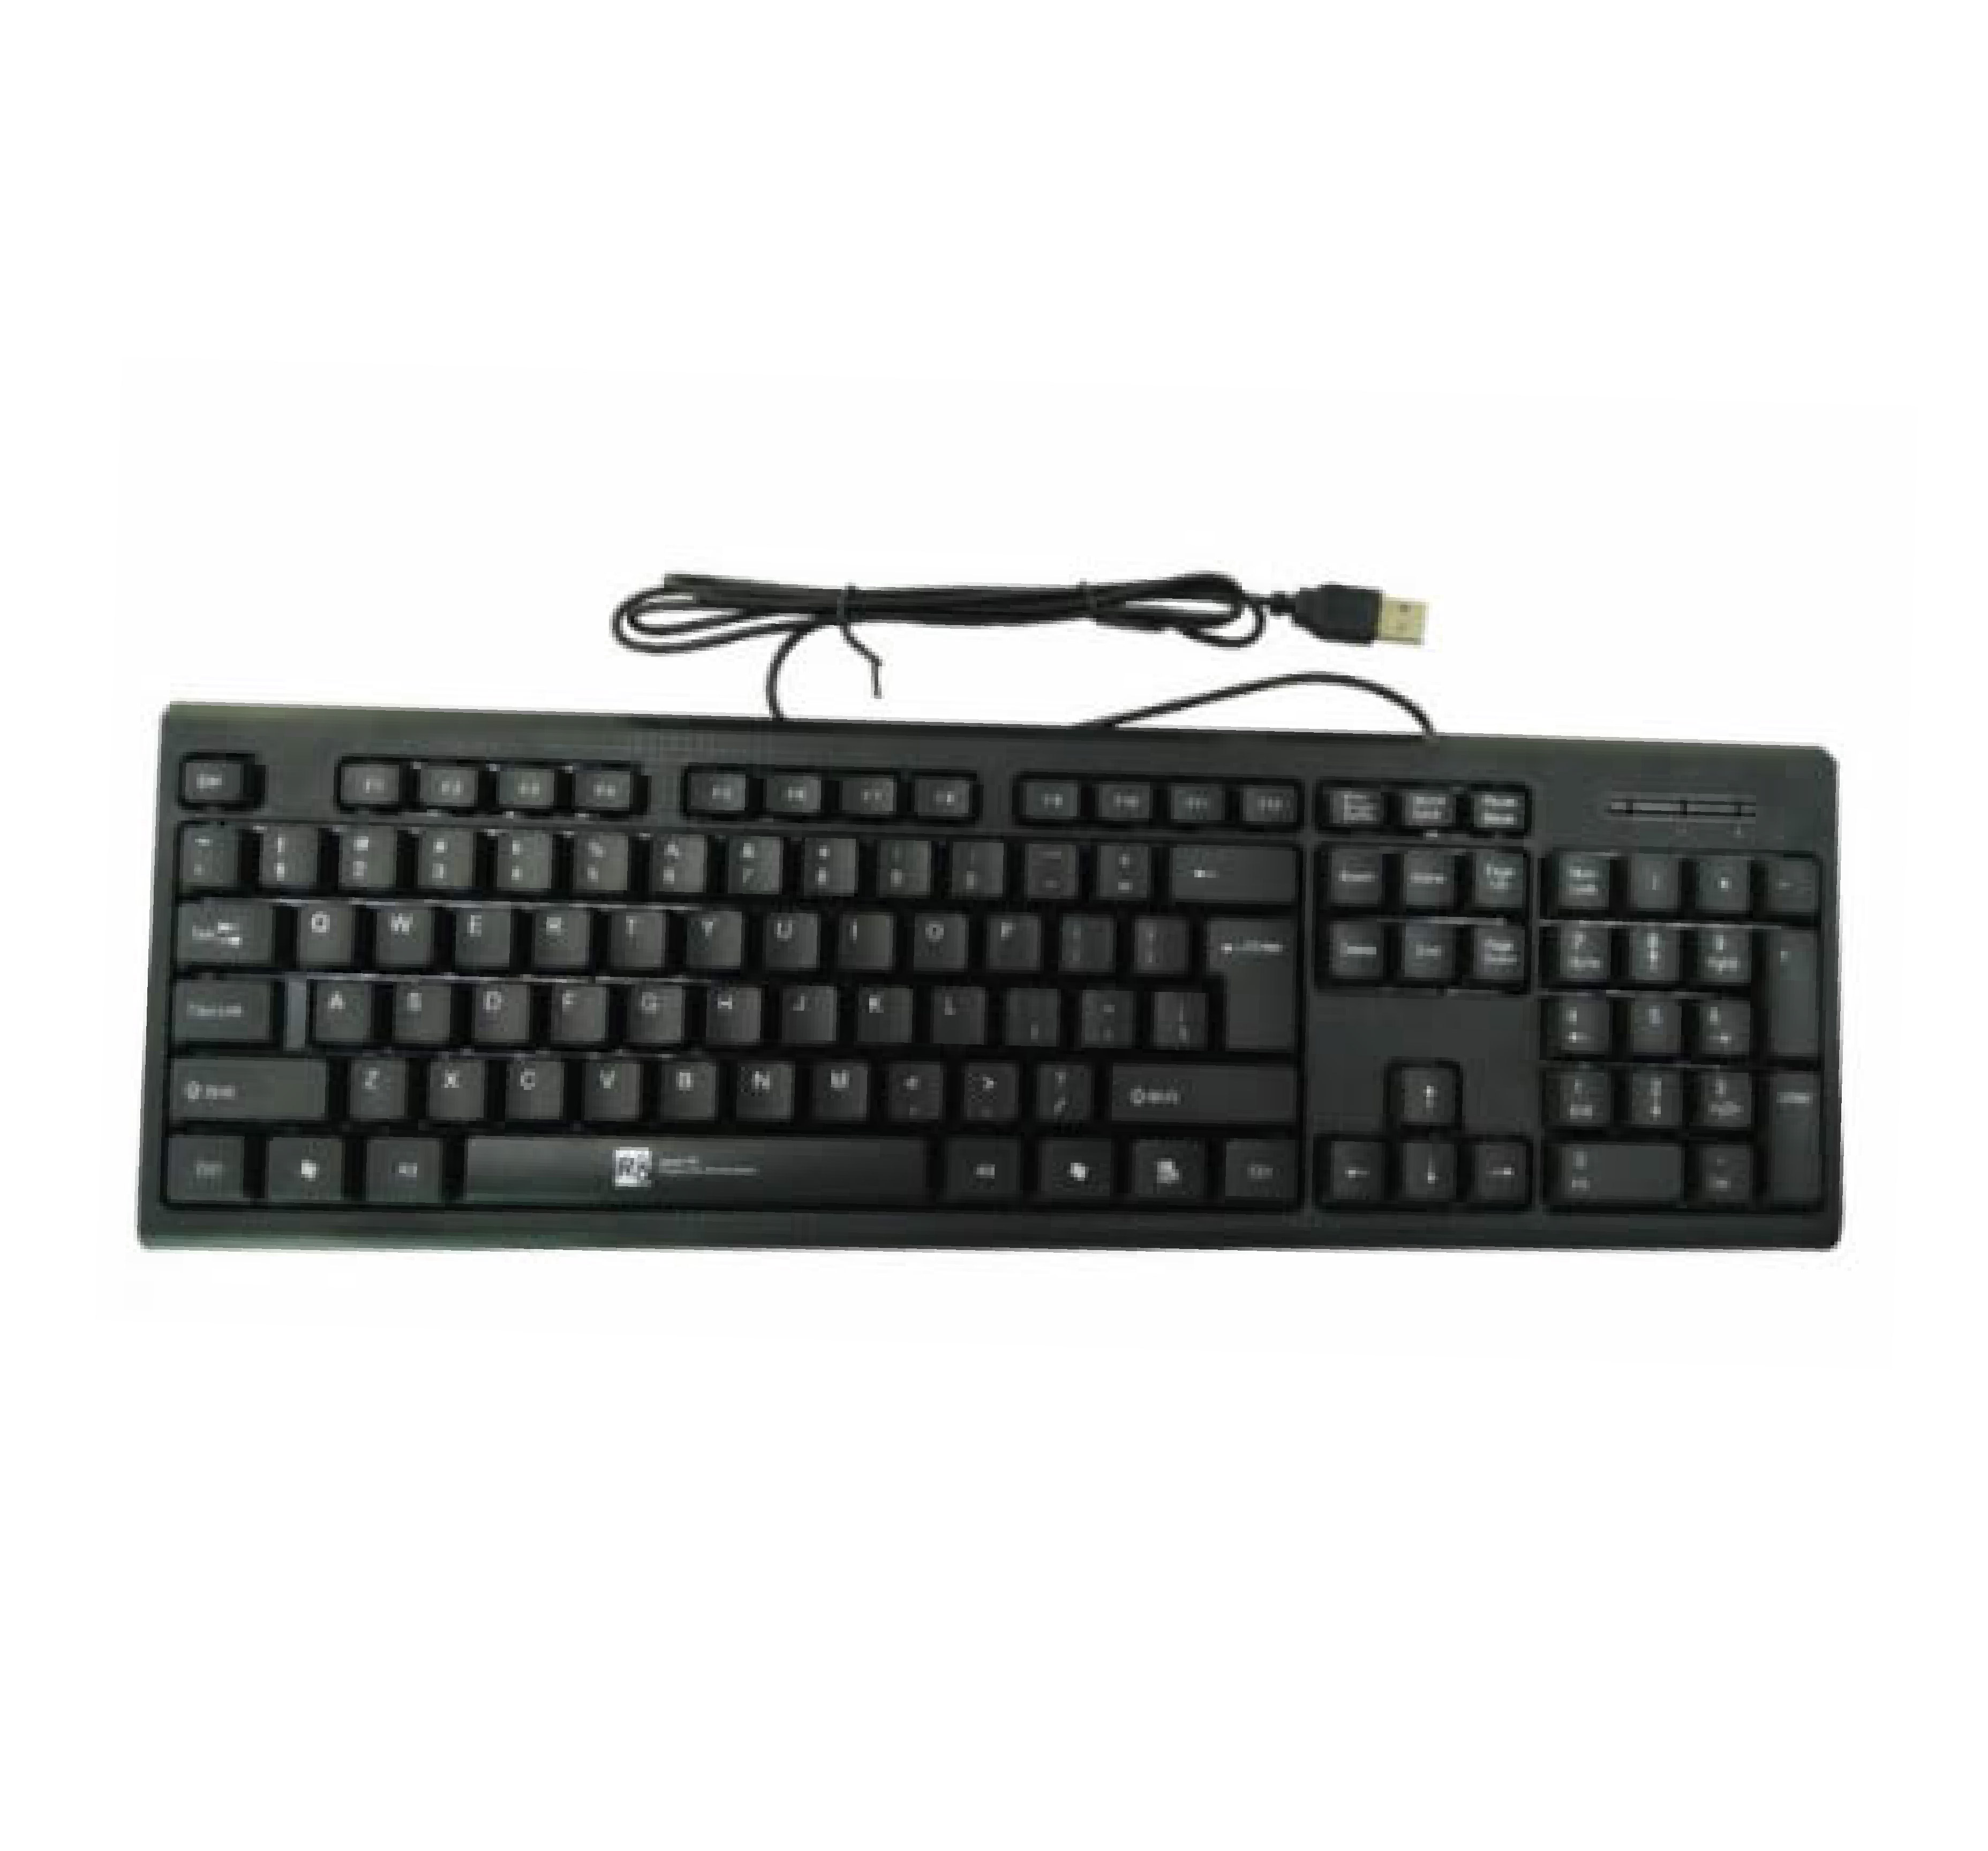 R8 1803 Keyboard